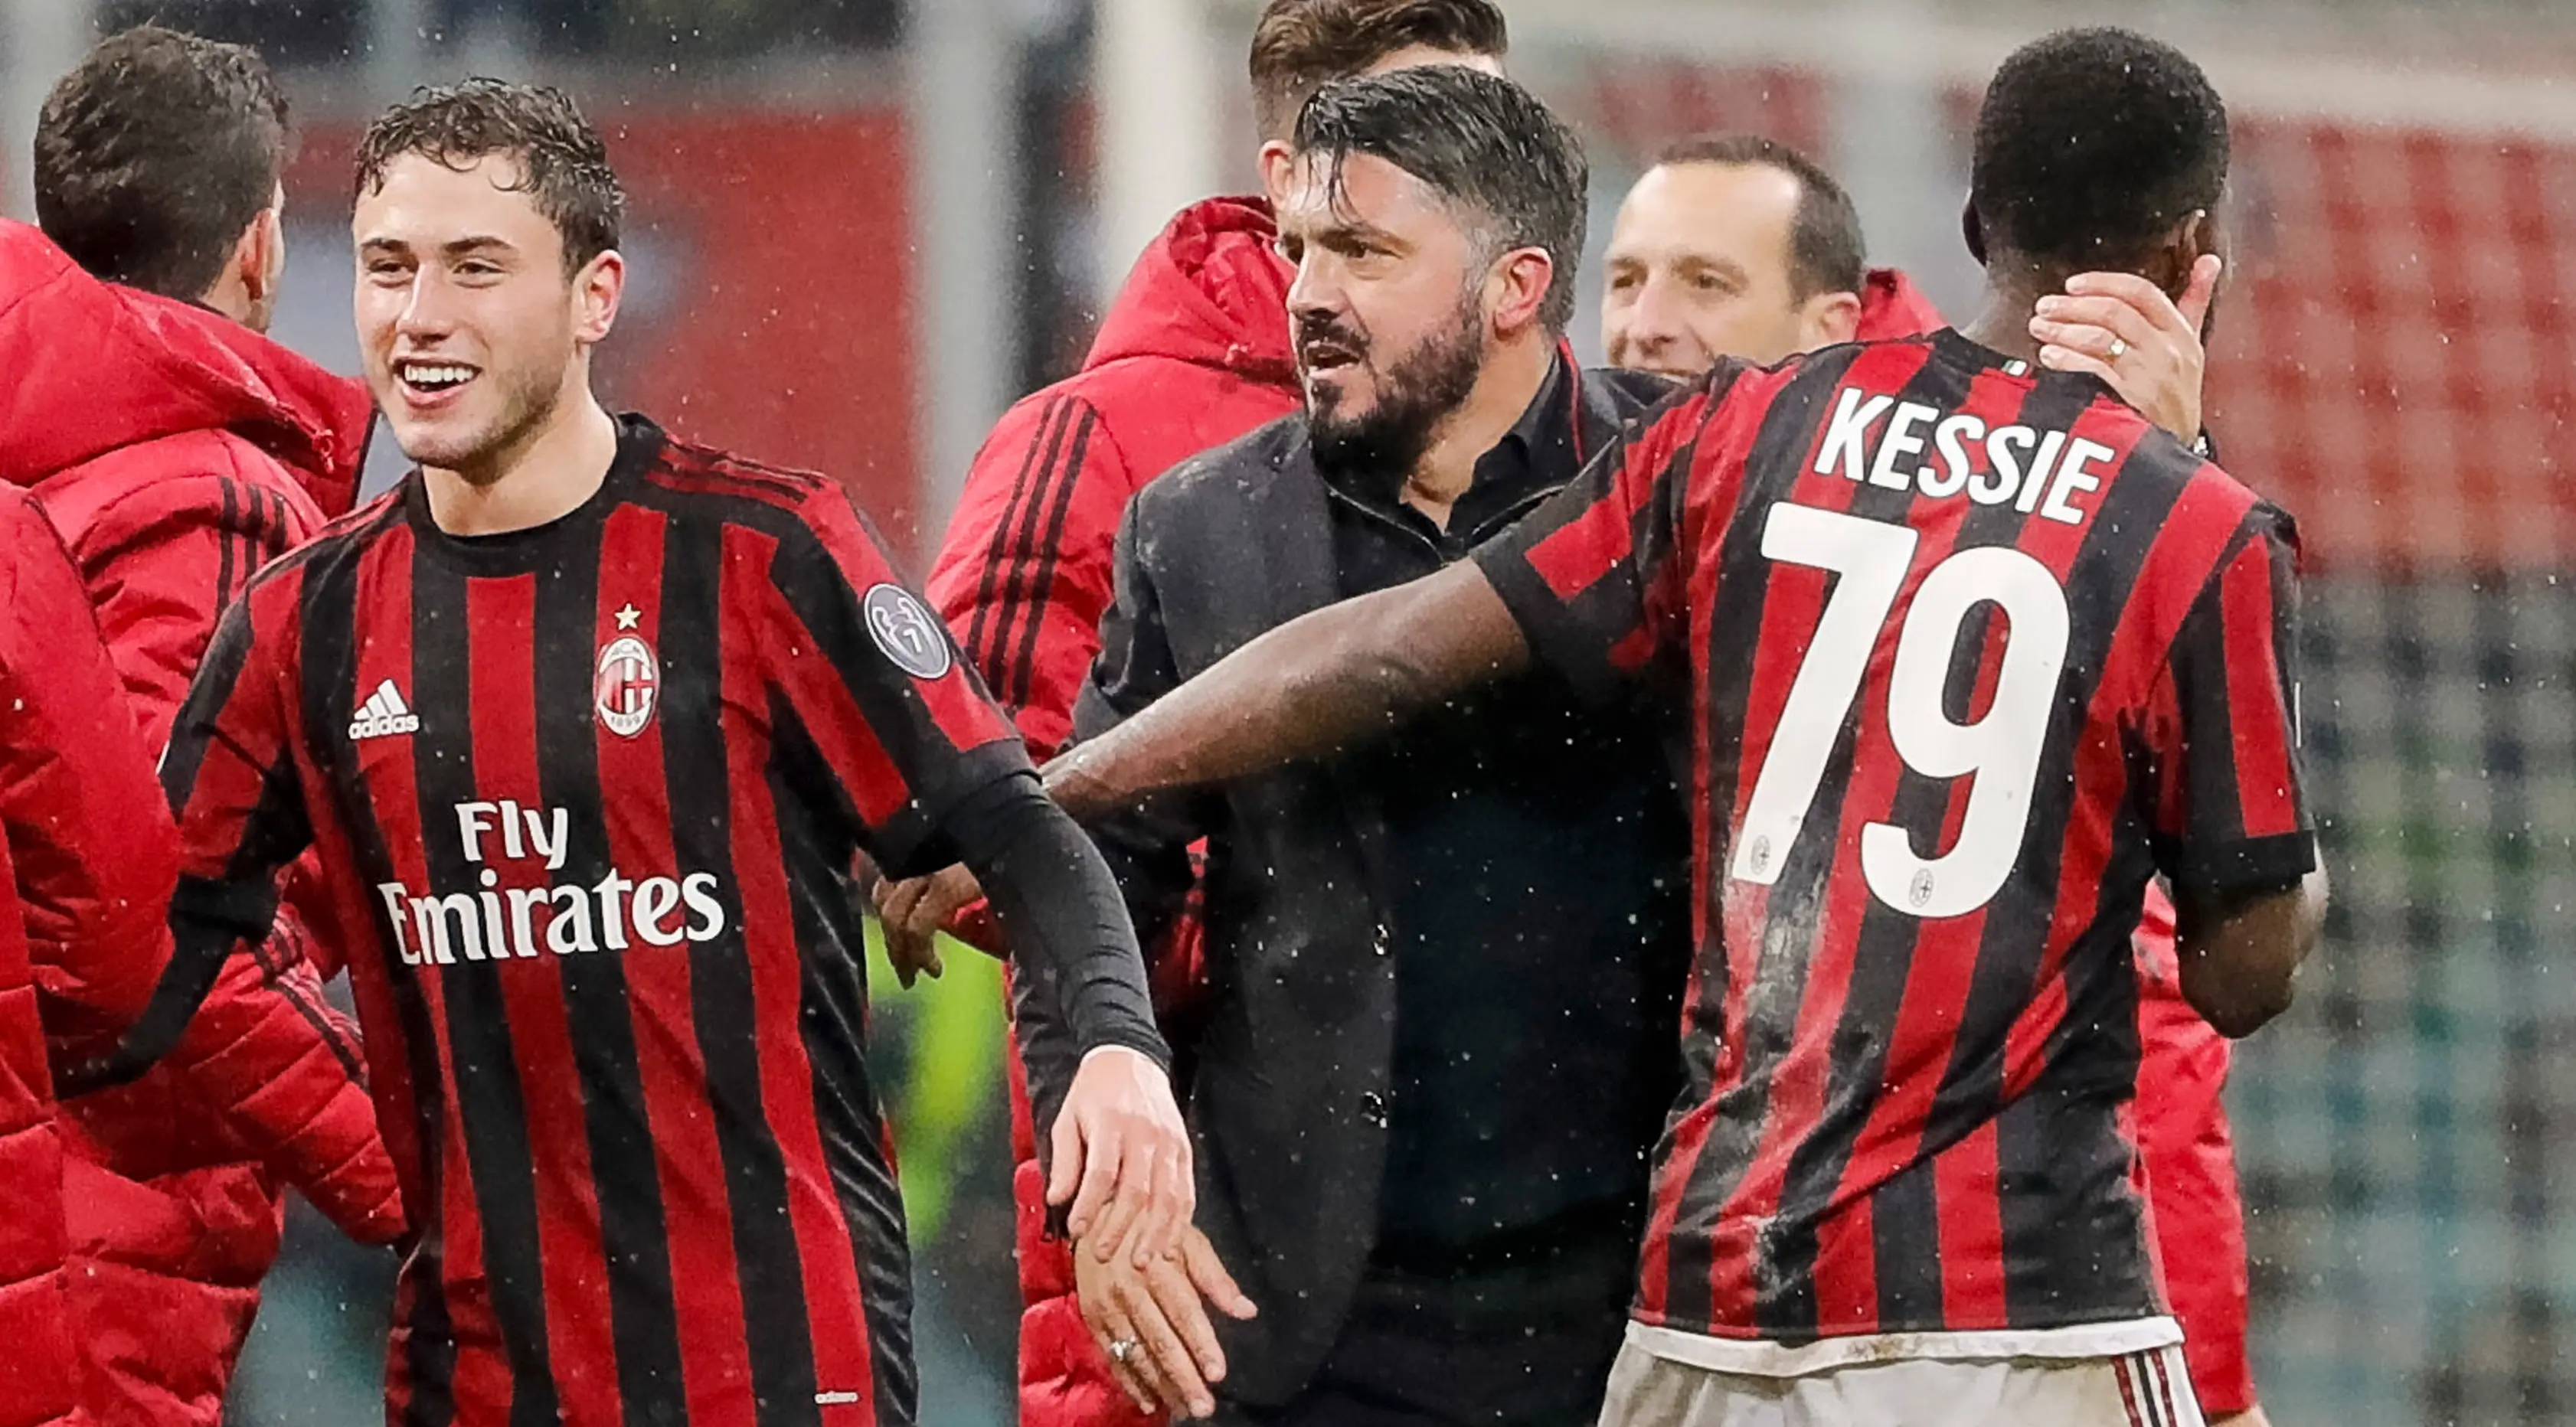 Pelatih AC Milan, Gennaro Gattuso bersama Franck Kessie dan Davide Calabria merayakan kemenangan atas Inter Milan pada laga perempat final Coppa Italia di San Siro, Kamis (28/12). AC Milan sukses melaju ke semifinal usai menang 1-0. (AP/Antonio Calanni)